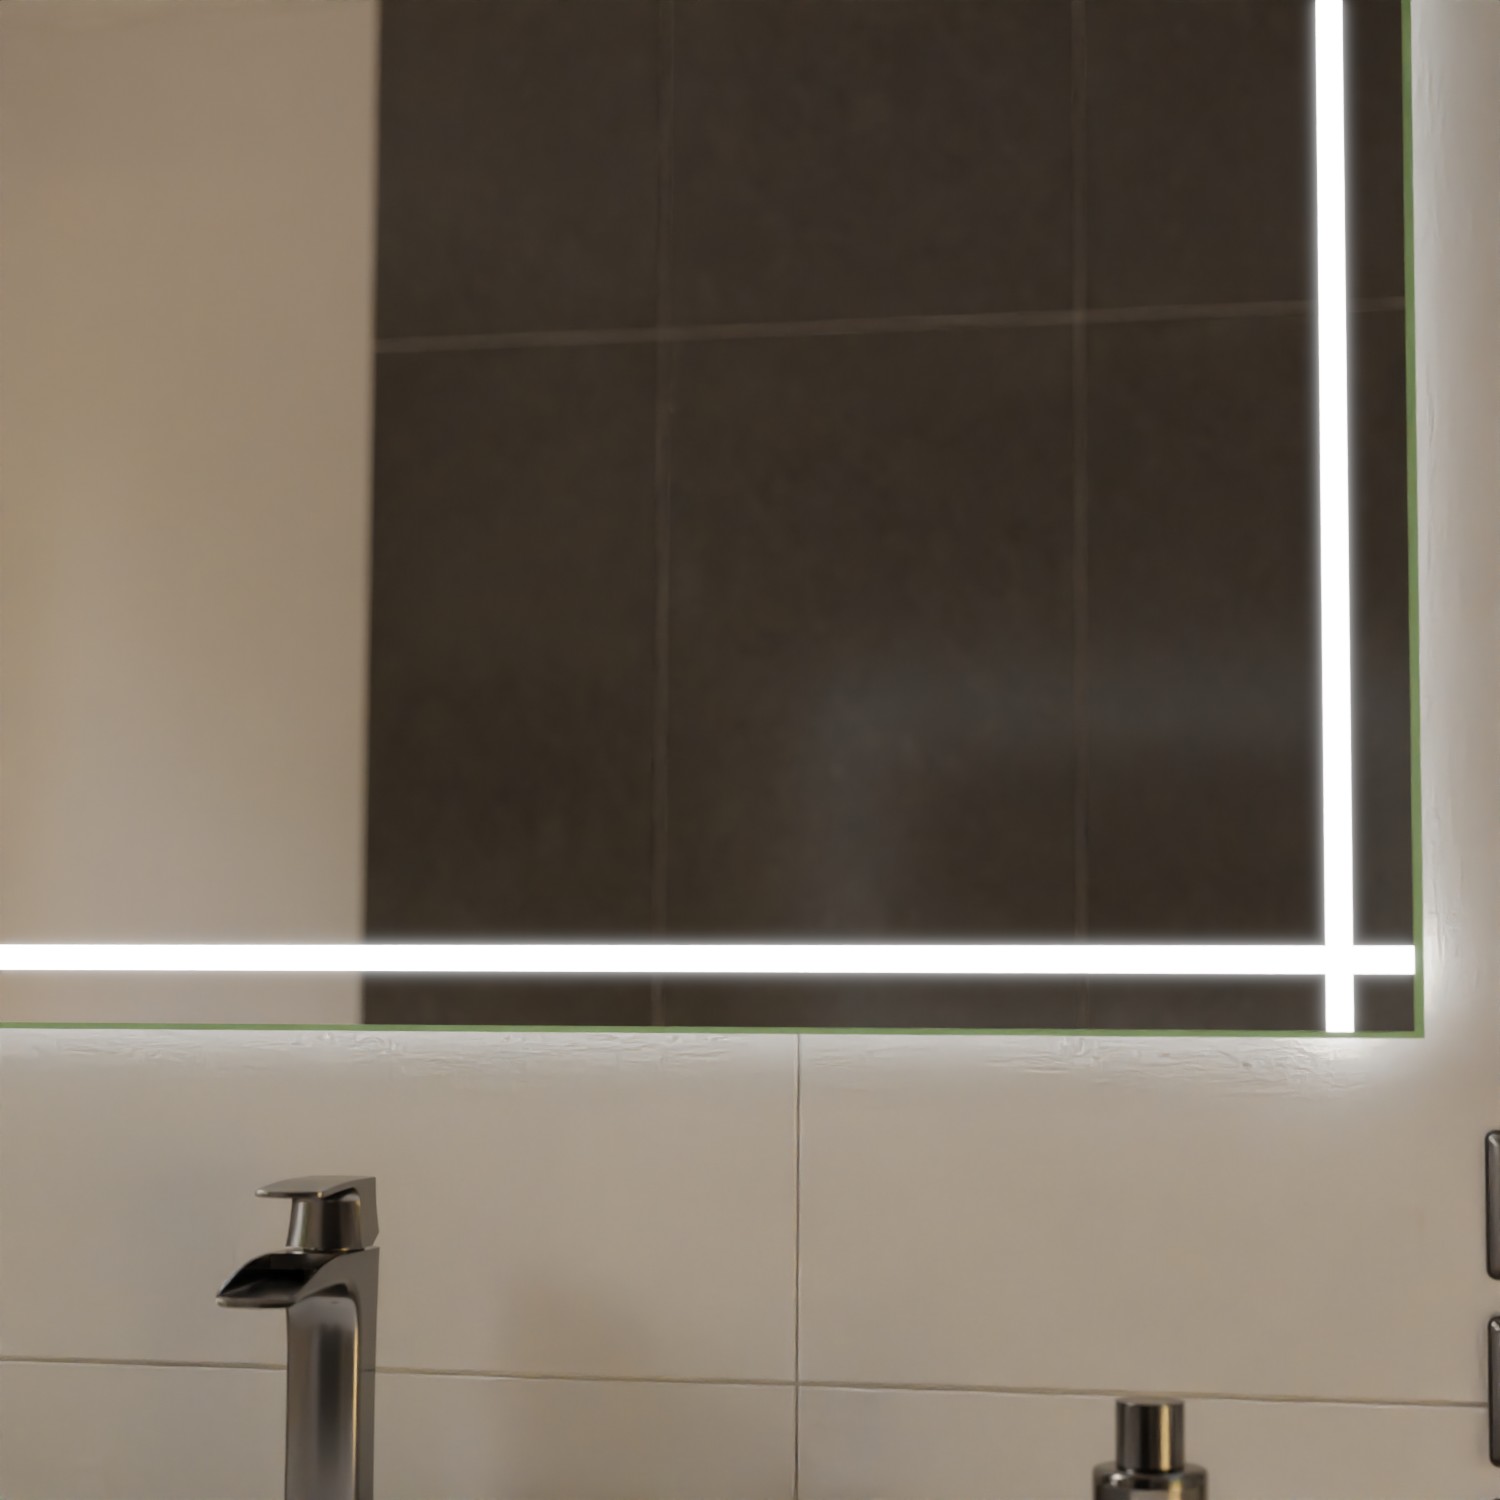 Badspiegel LED Ulm